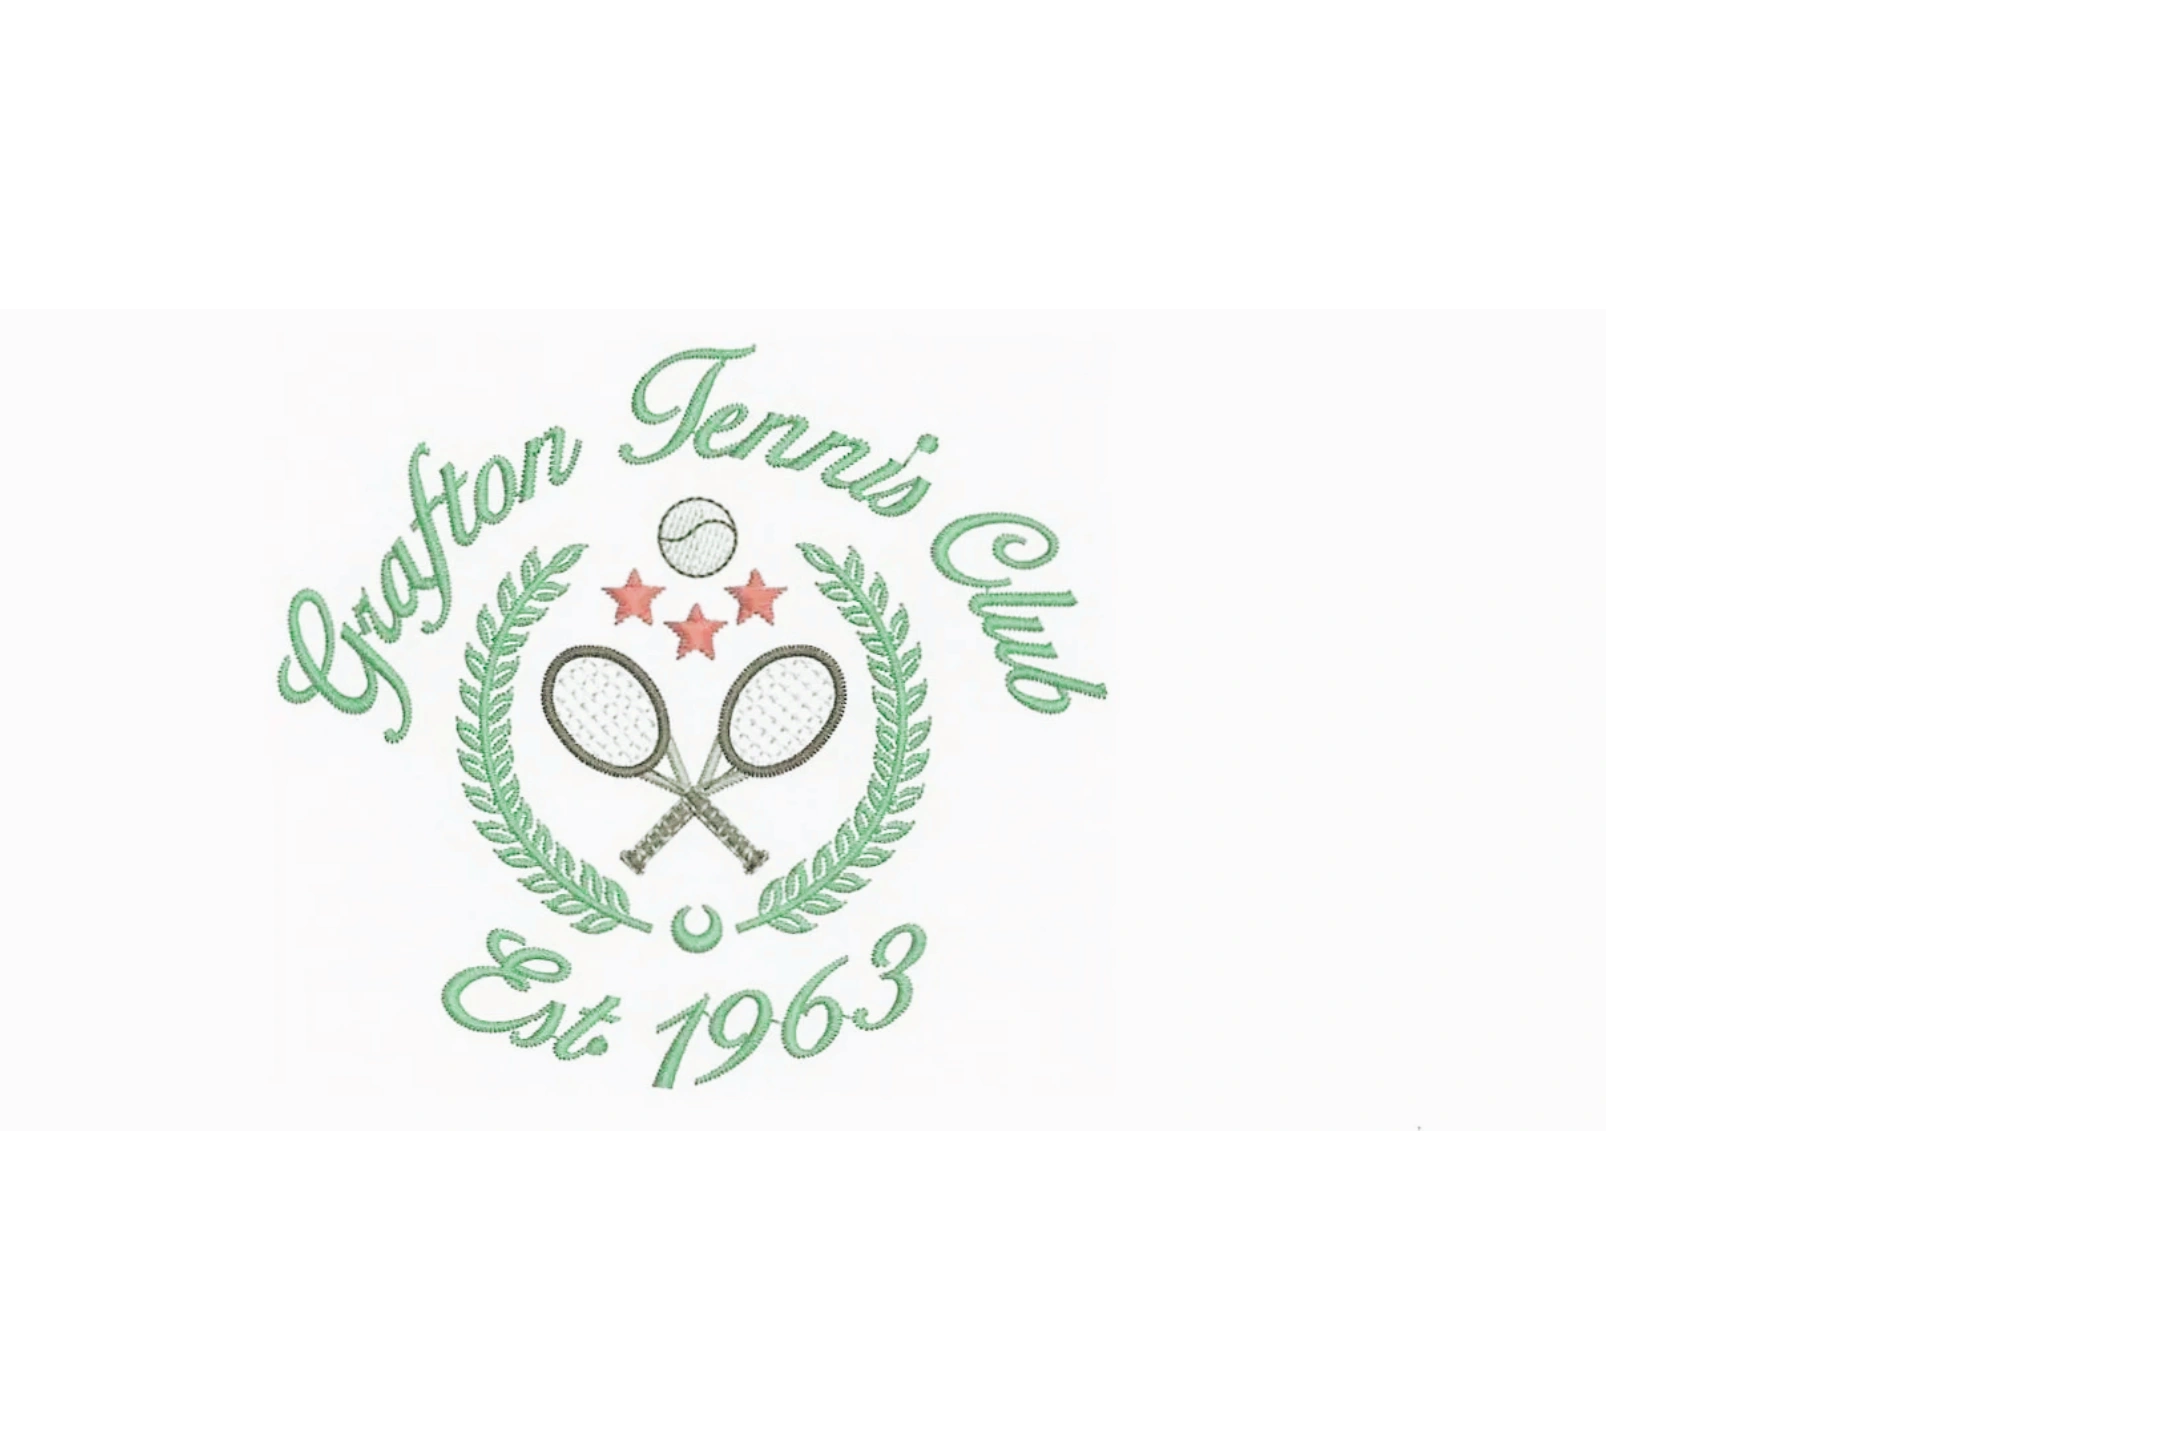 Grafton Tennis Club